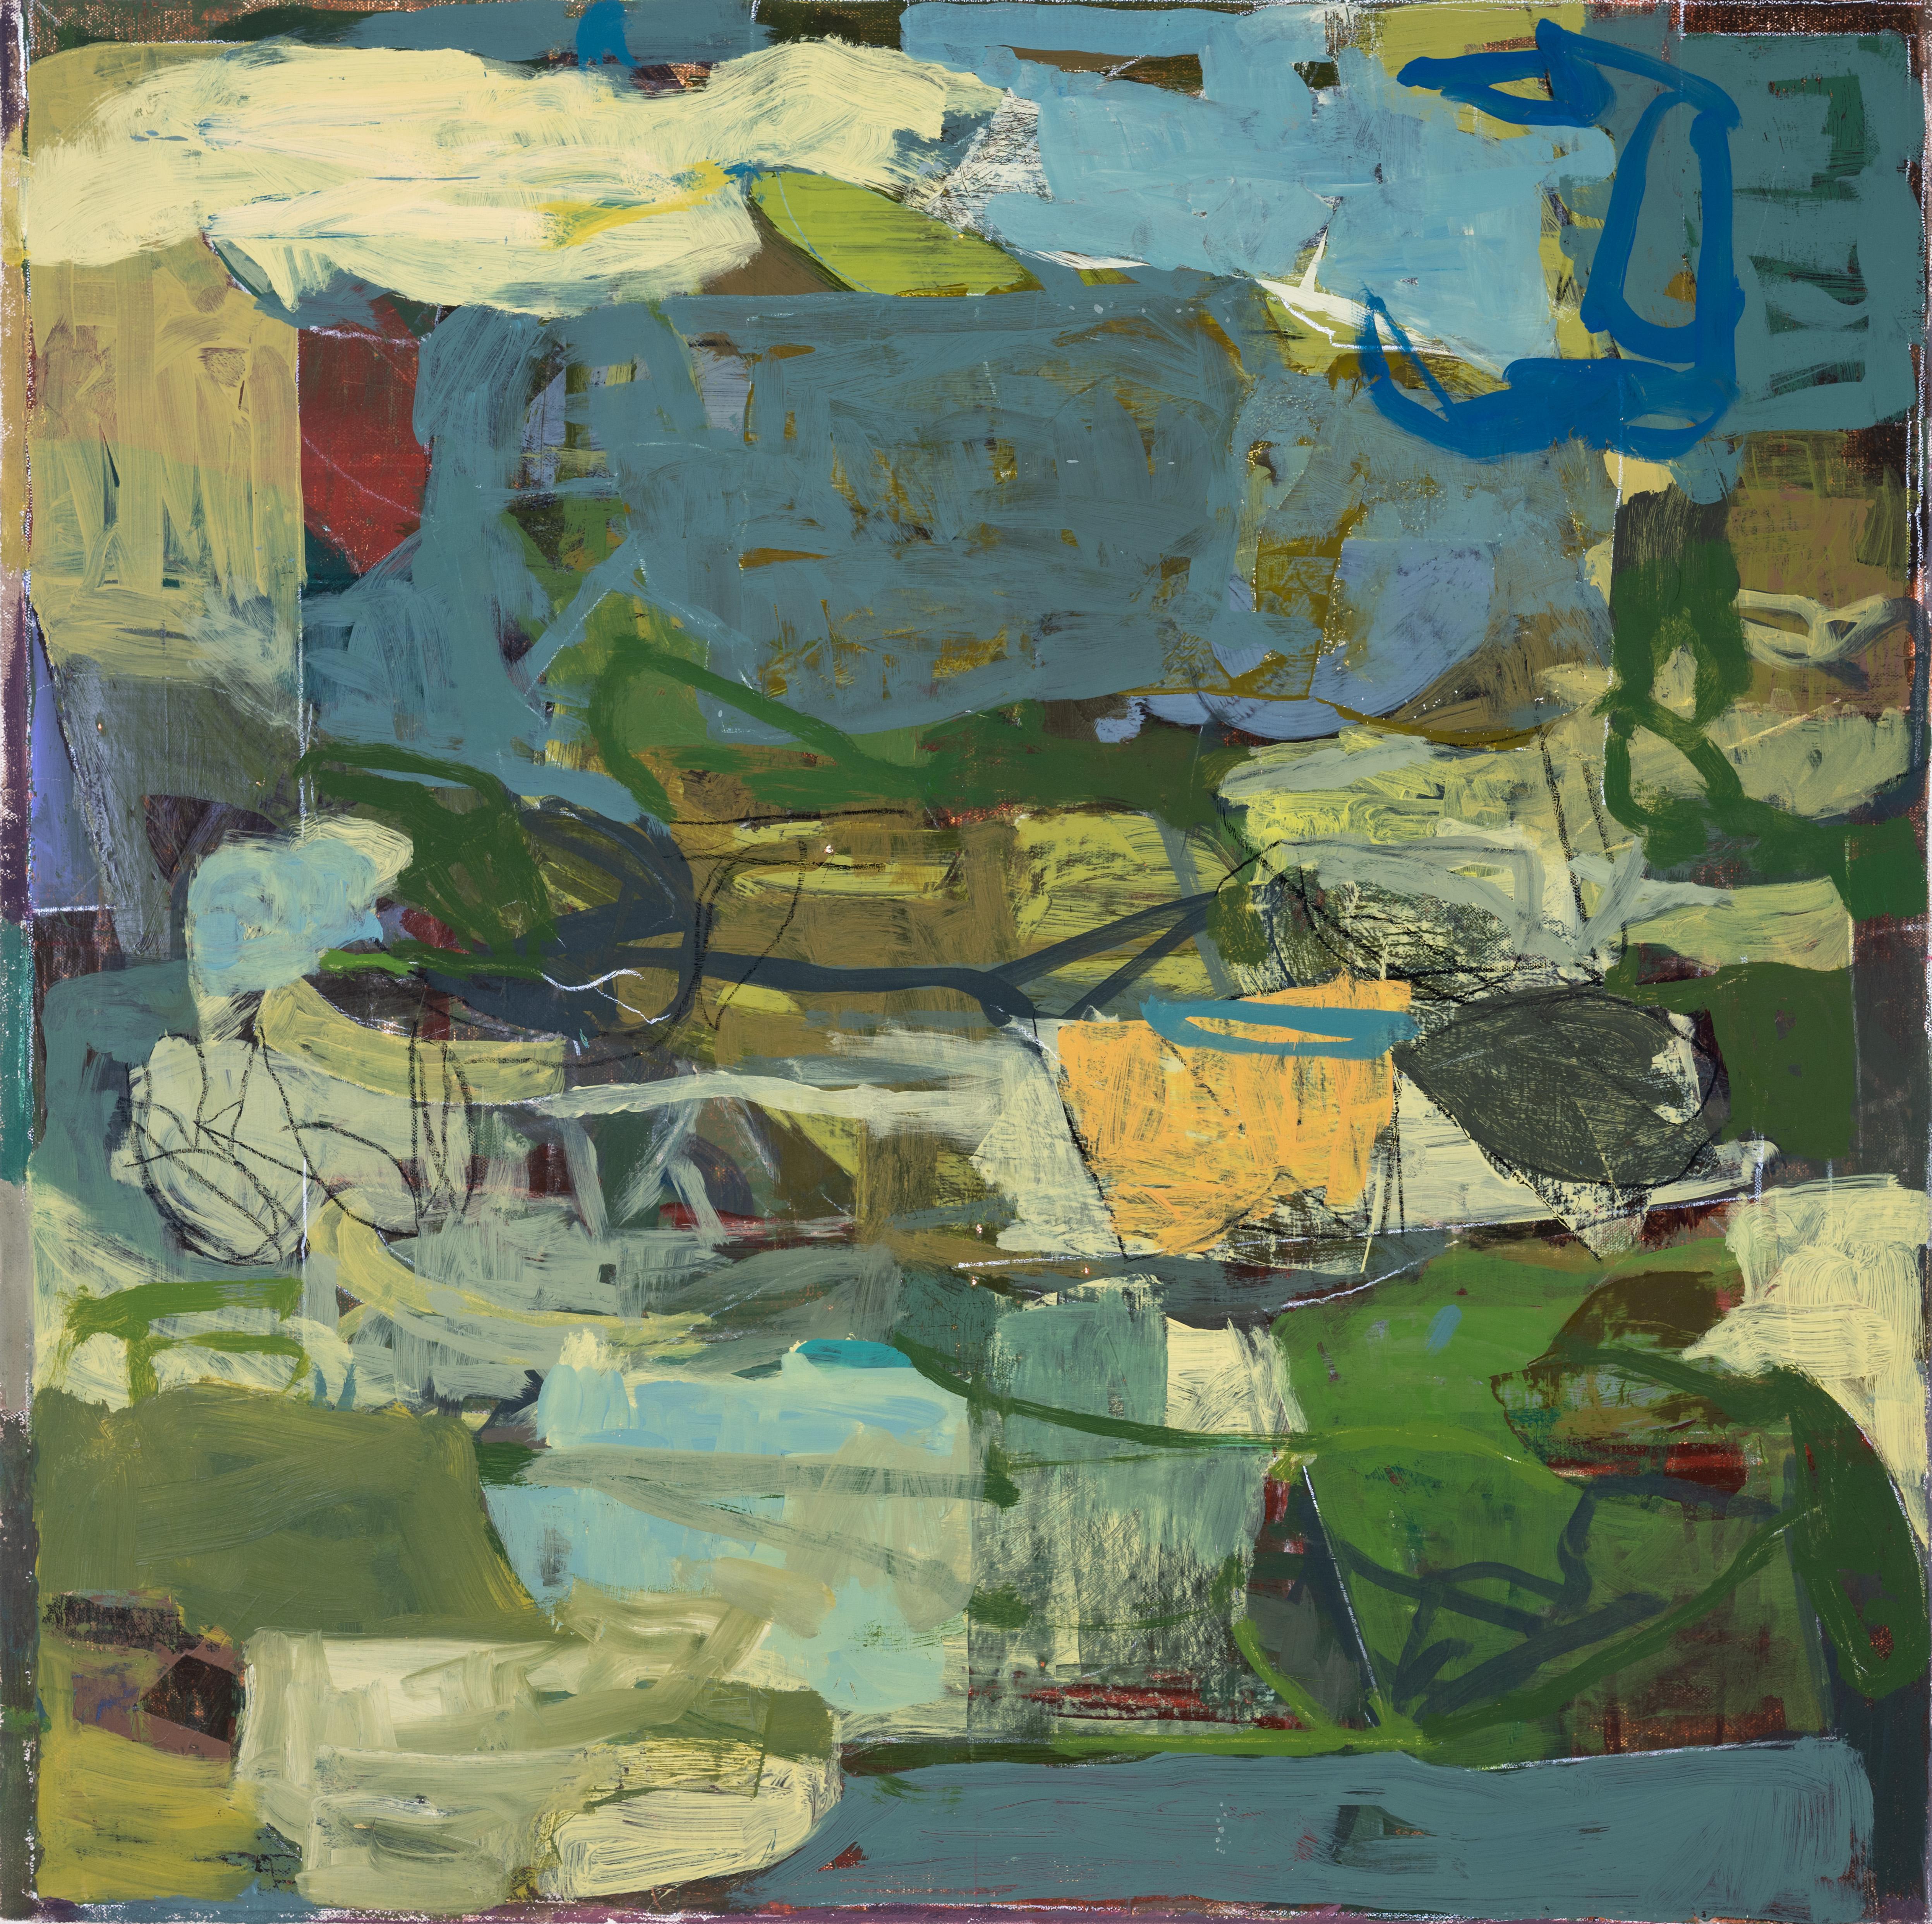 Mai 29 (Abstraktes expressionistisches Ölgemälde in Erdtönen in Grün und Blau) – Painting von James O'Shea